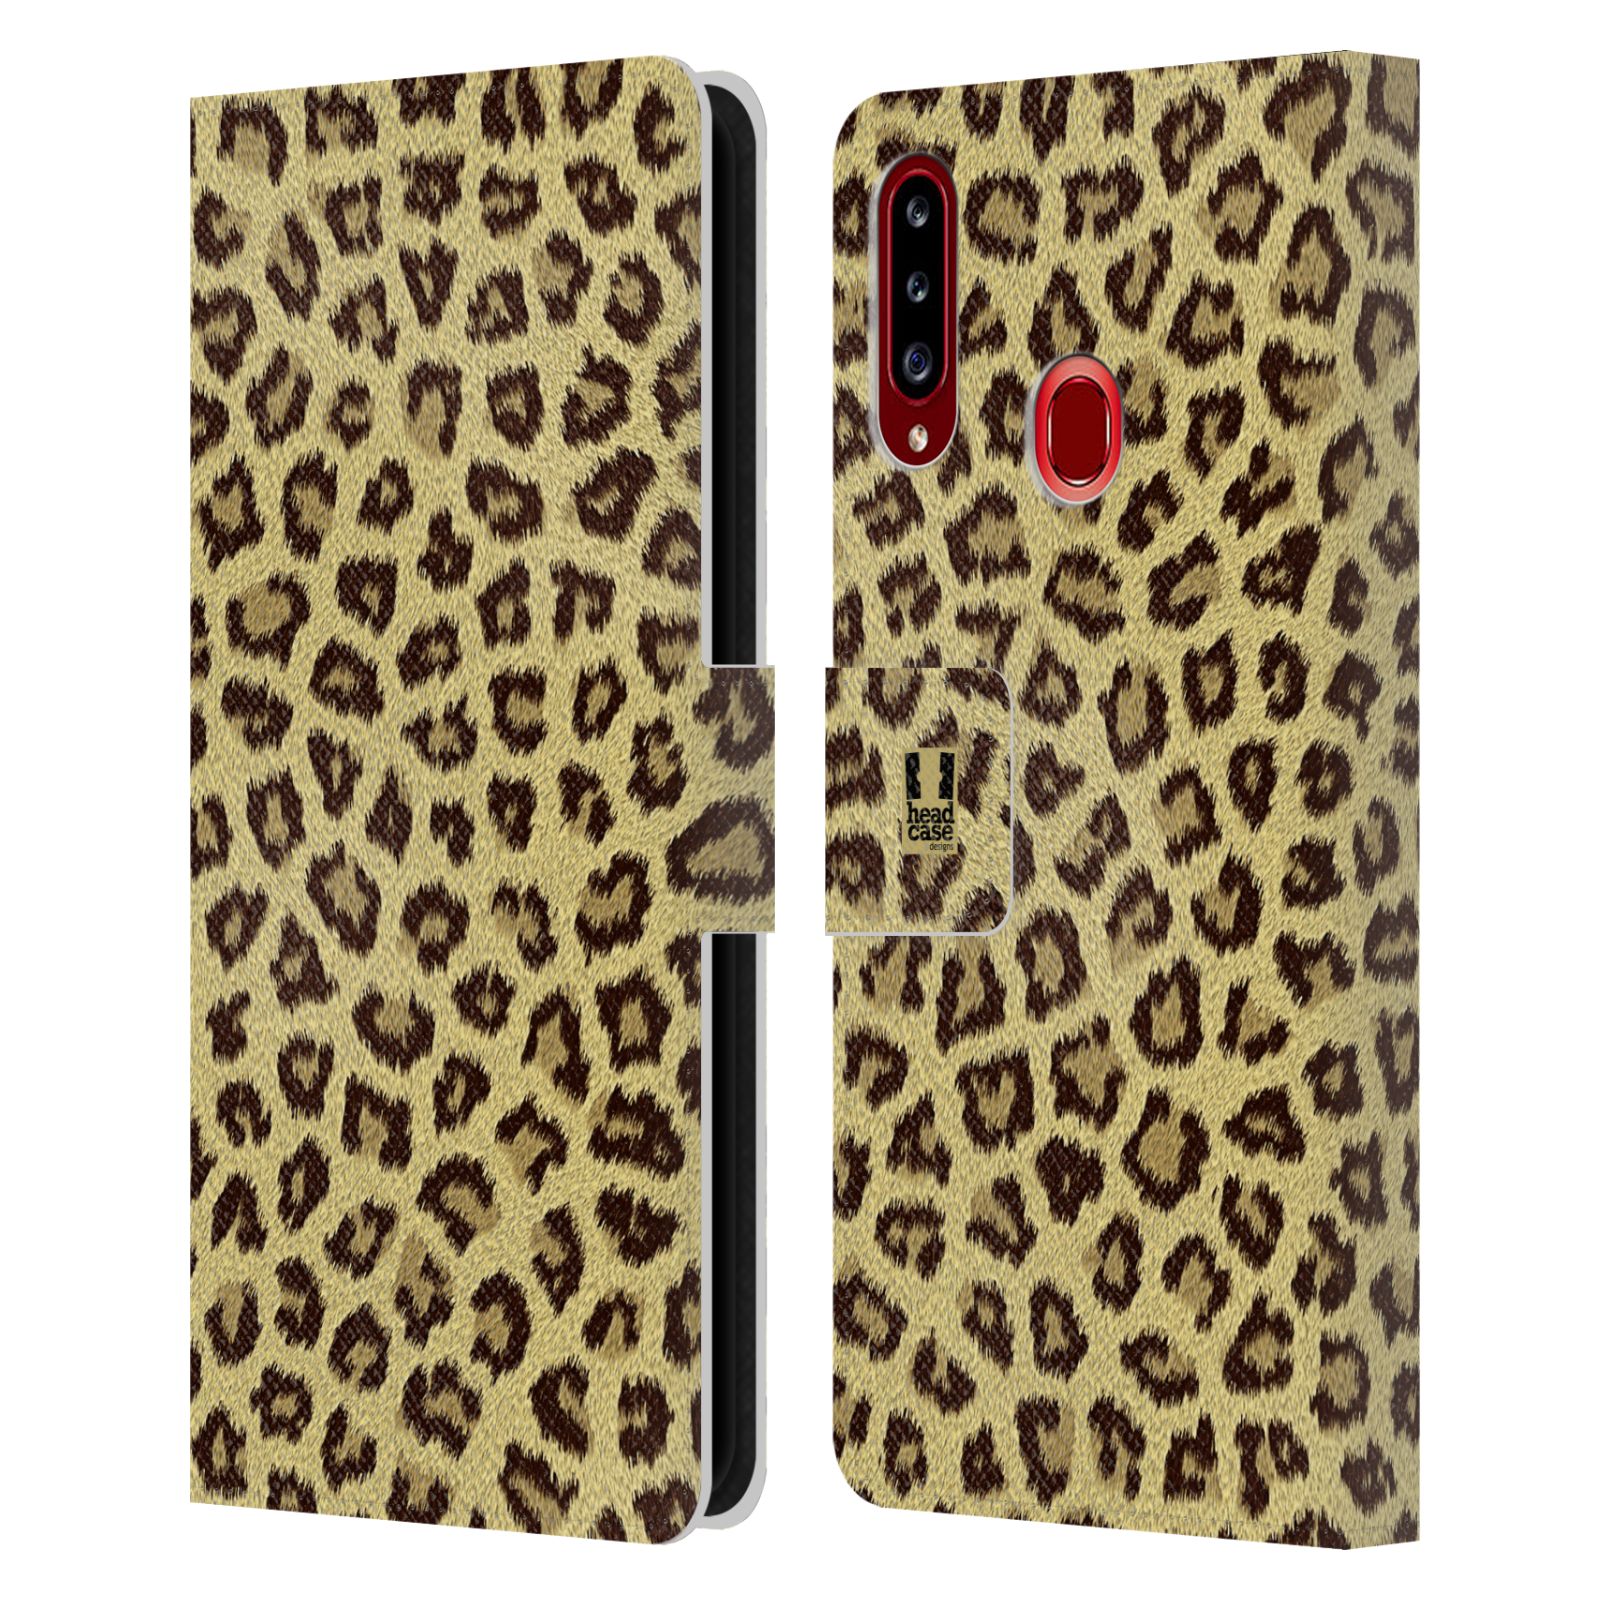 HEAD CASE Flipové pouzdro pro mobil Samsung Galaxy A20s zvíře srst divoká kolekce jaguár, gepard